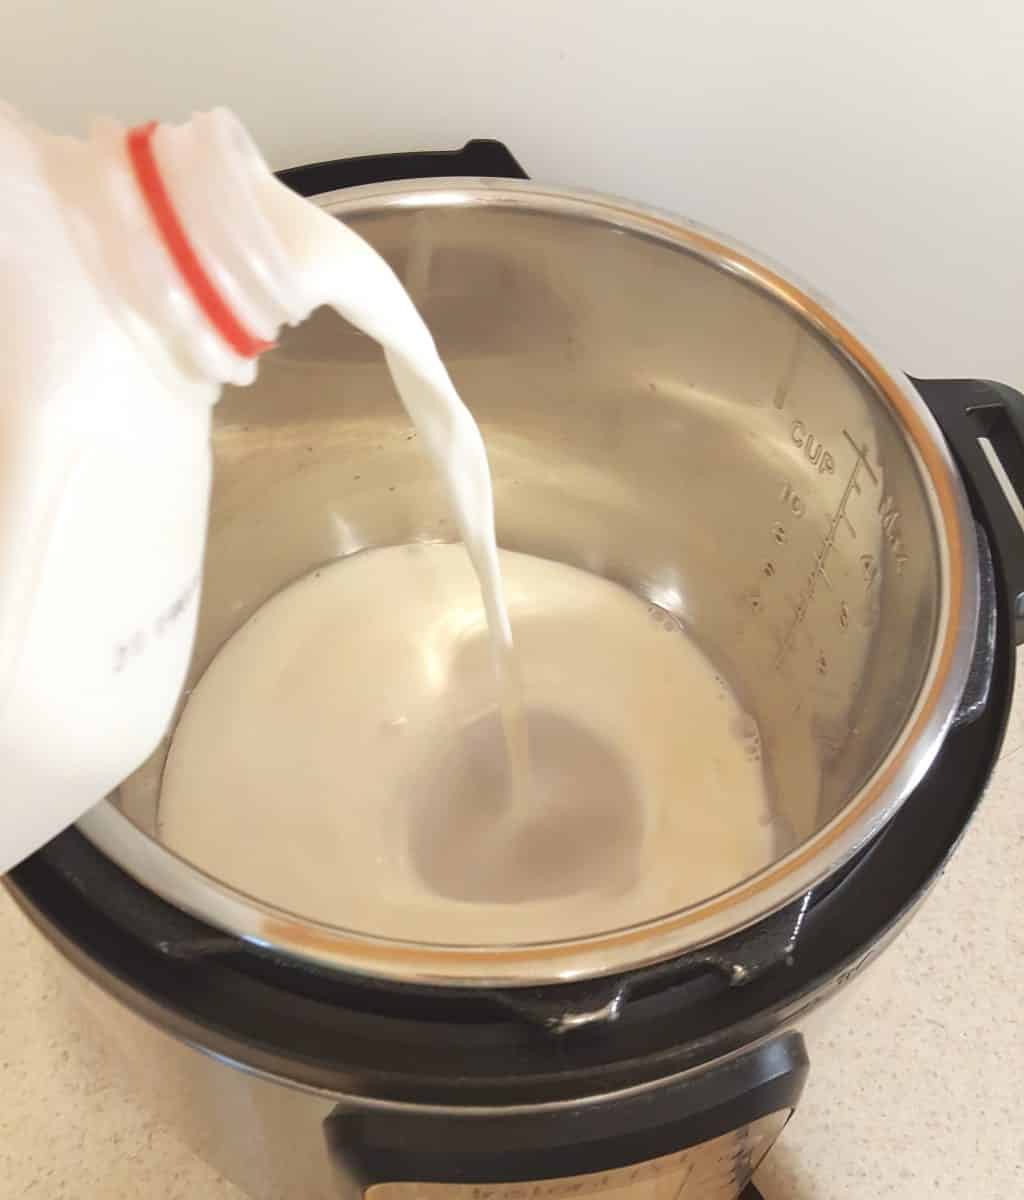 Pour the Milk into the Instant Pot